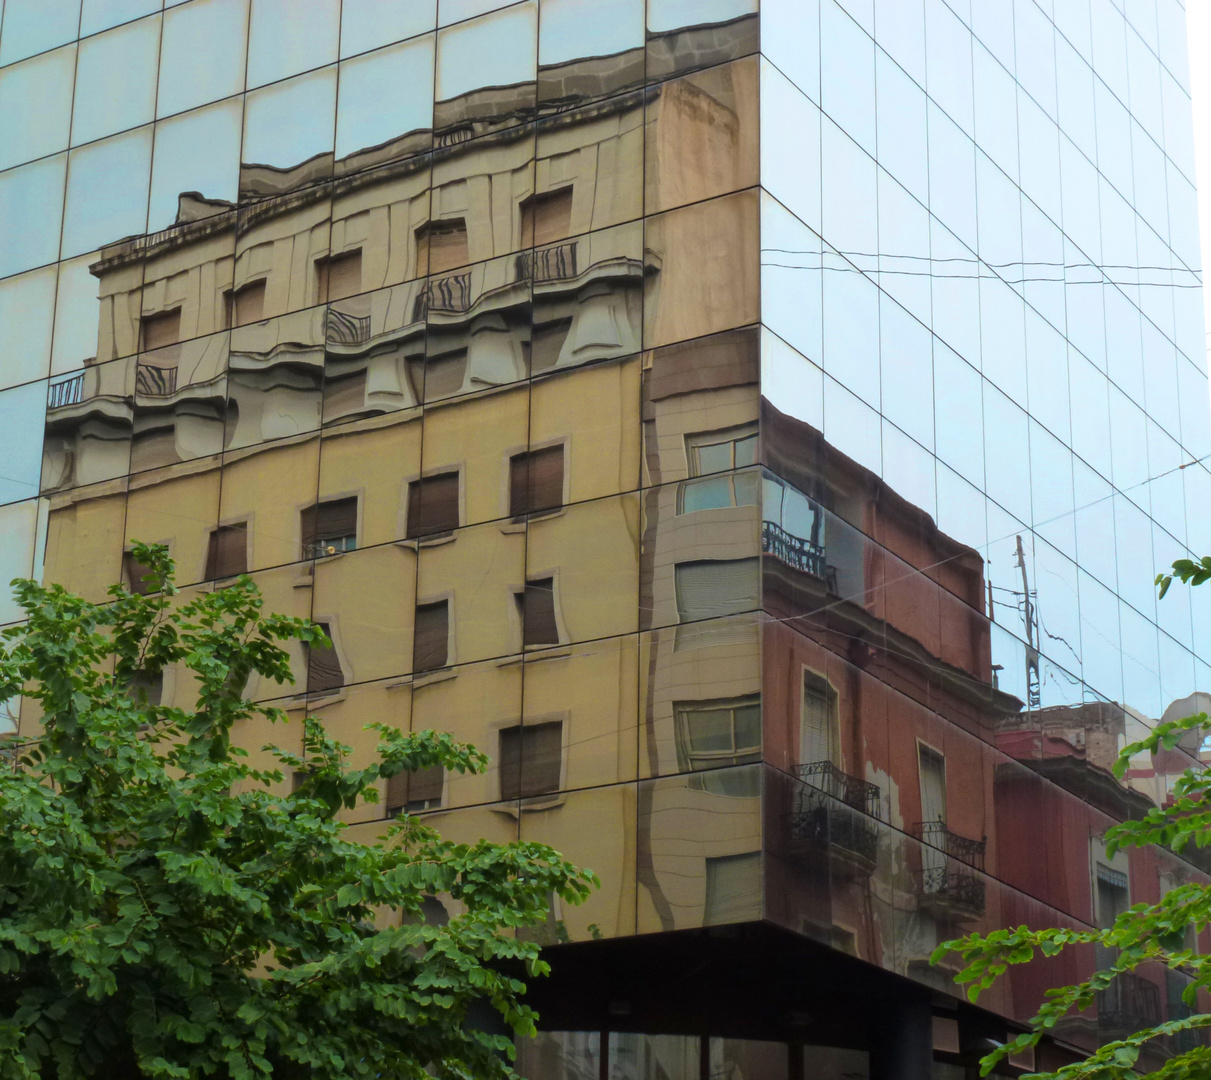 zwei verschiedene Fassaden an den Spiegelfassaden e i n e s Gebäudes